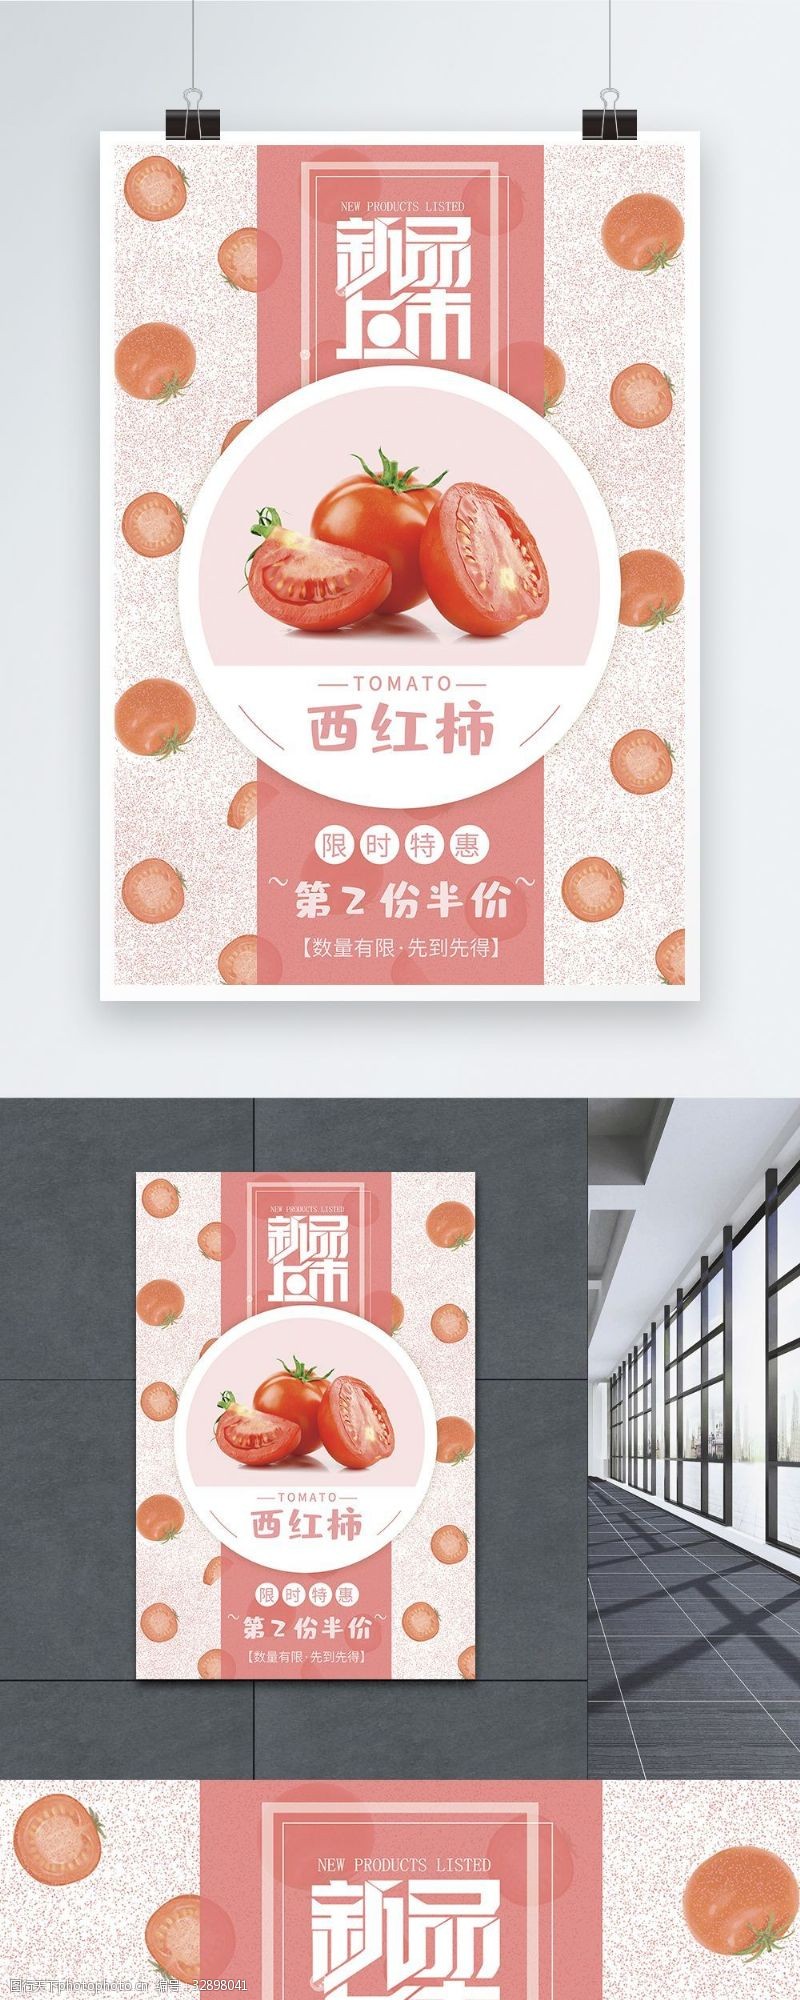 限时特惠粉红色西红柿促销海报